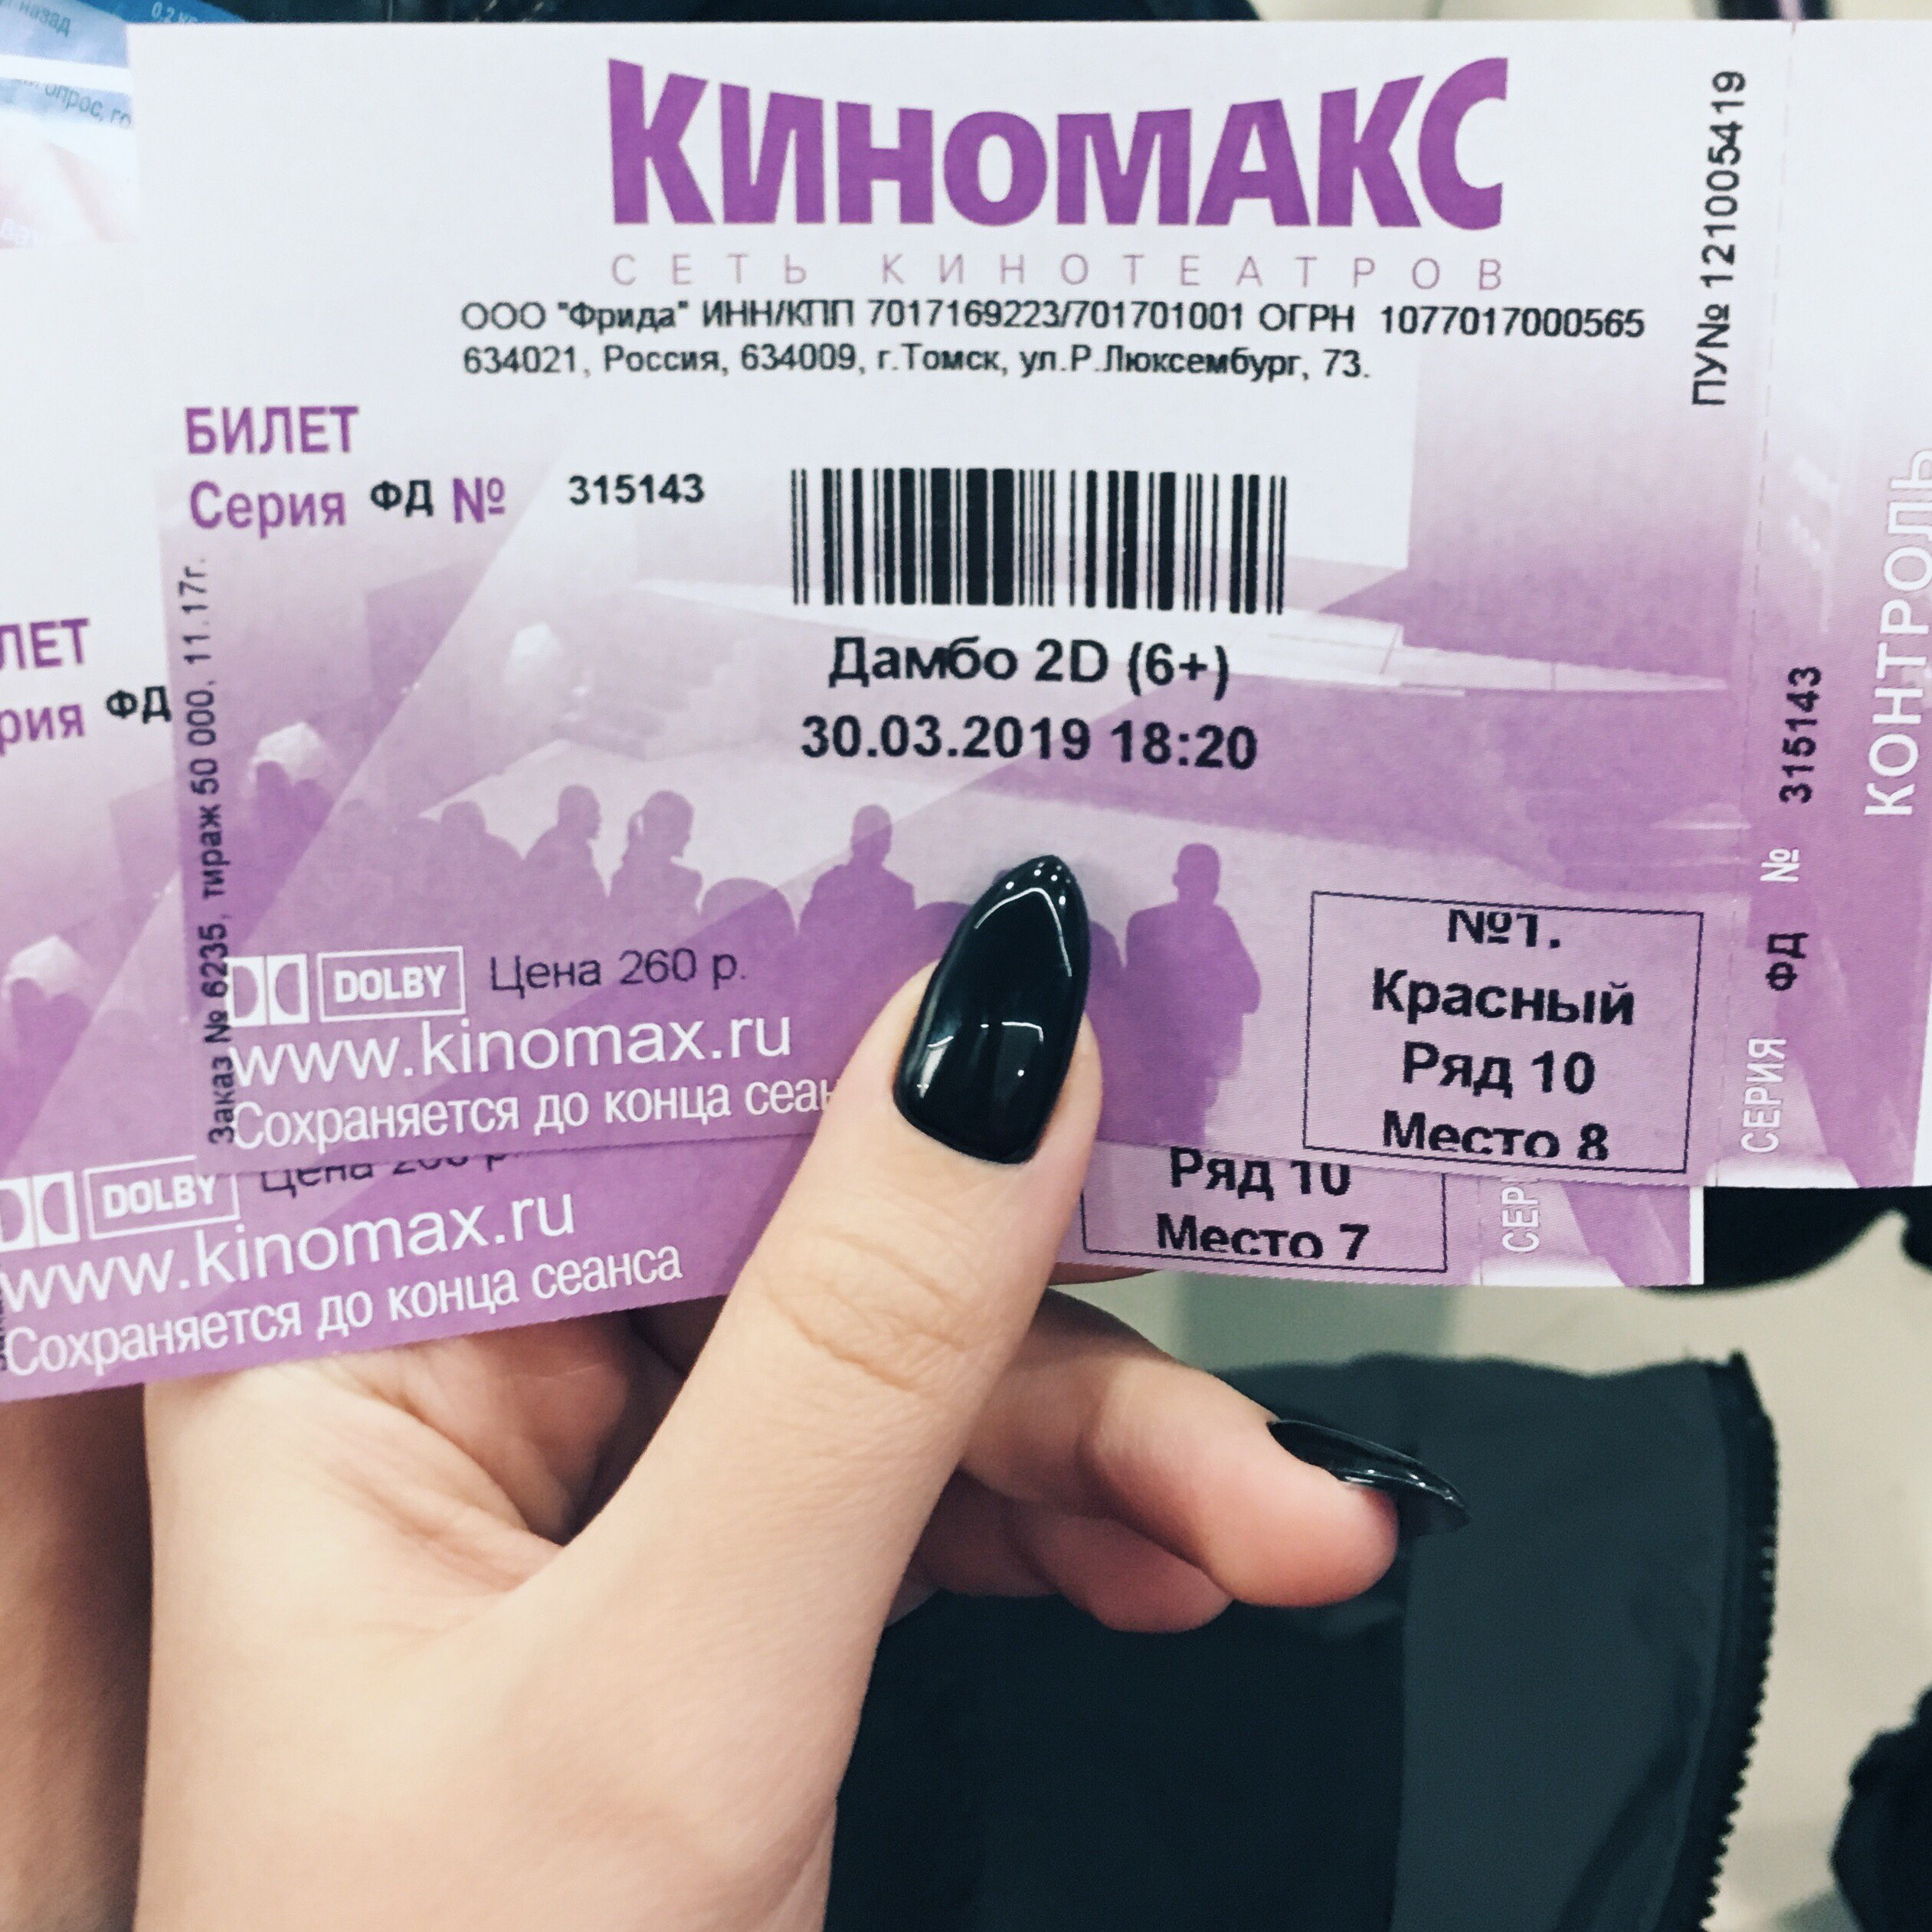 Билеты в кинотеатр казань. Билет Киномакс. Киномакс (кинотеатр, Томск). Киномакс Томск.